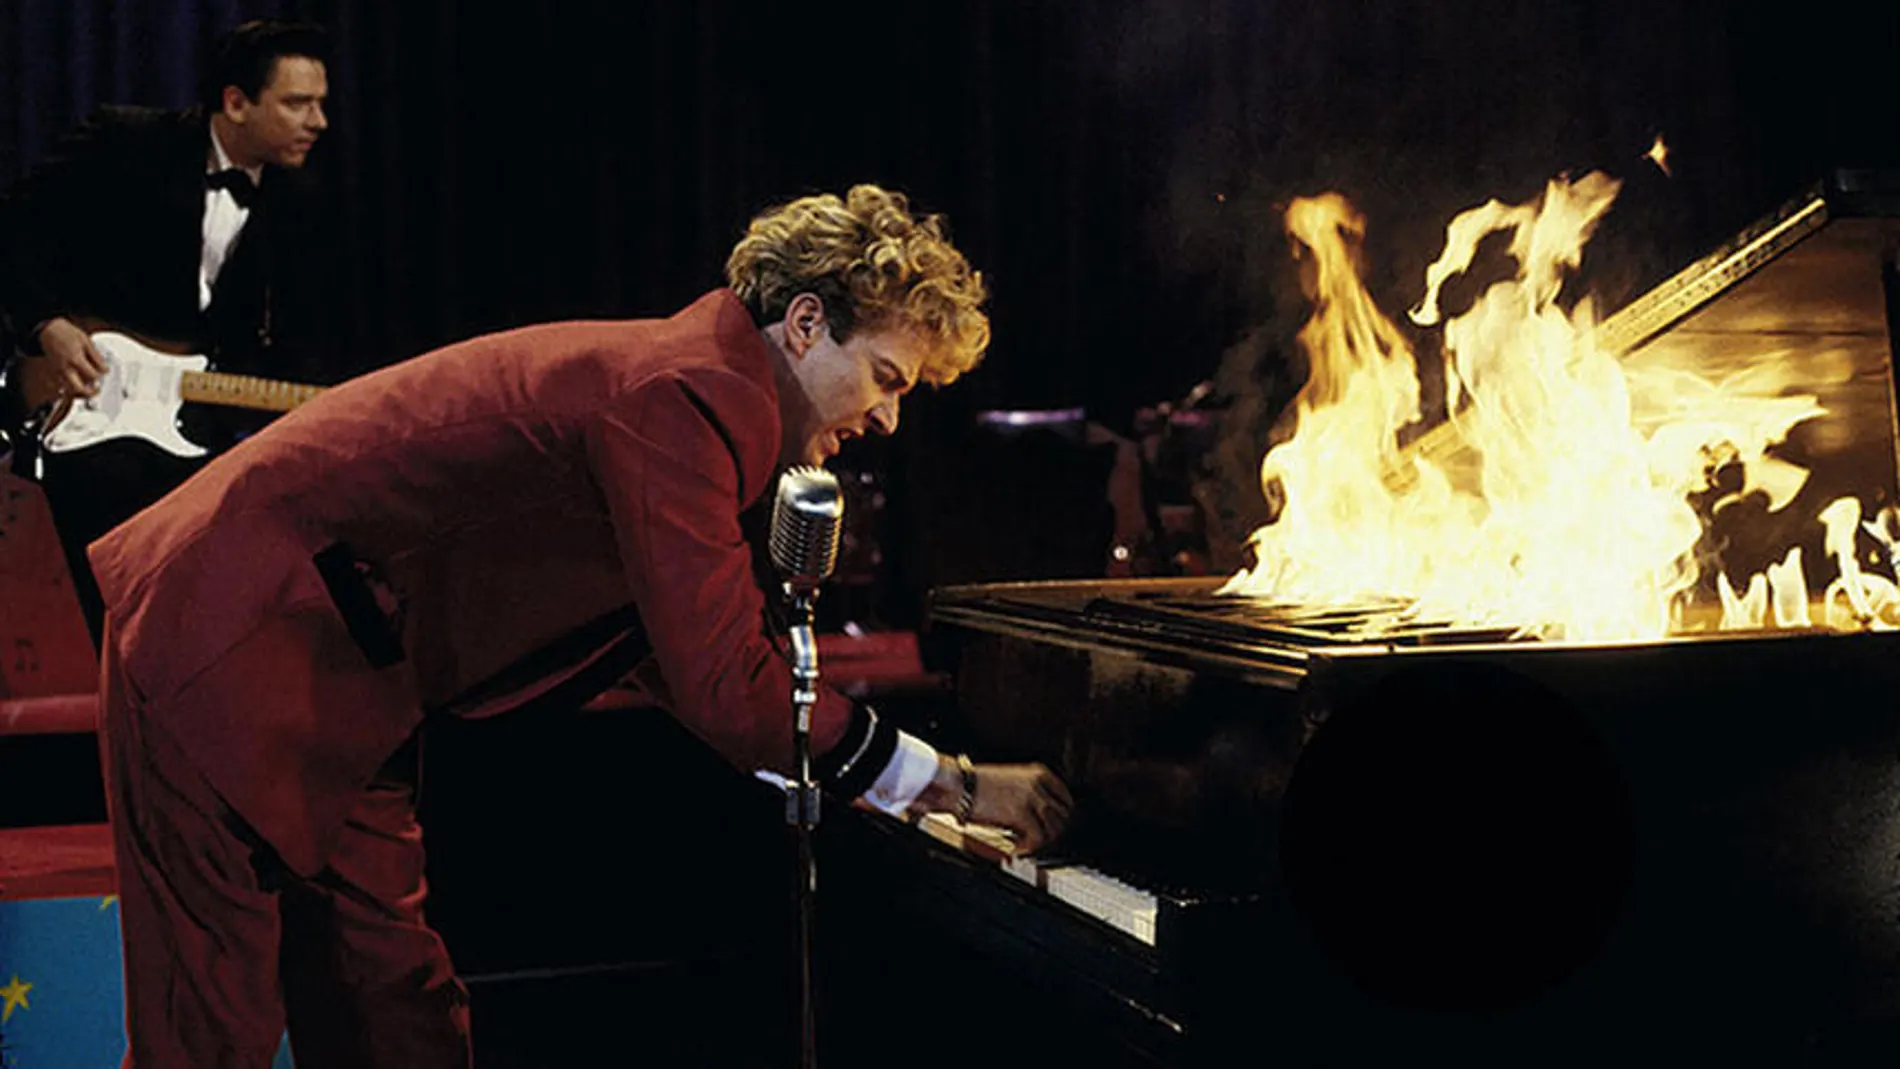 Imagen de la película "Gran bola de fuego" que recrea el suceso